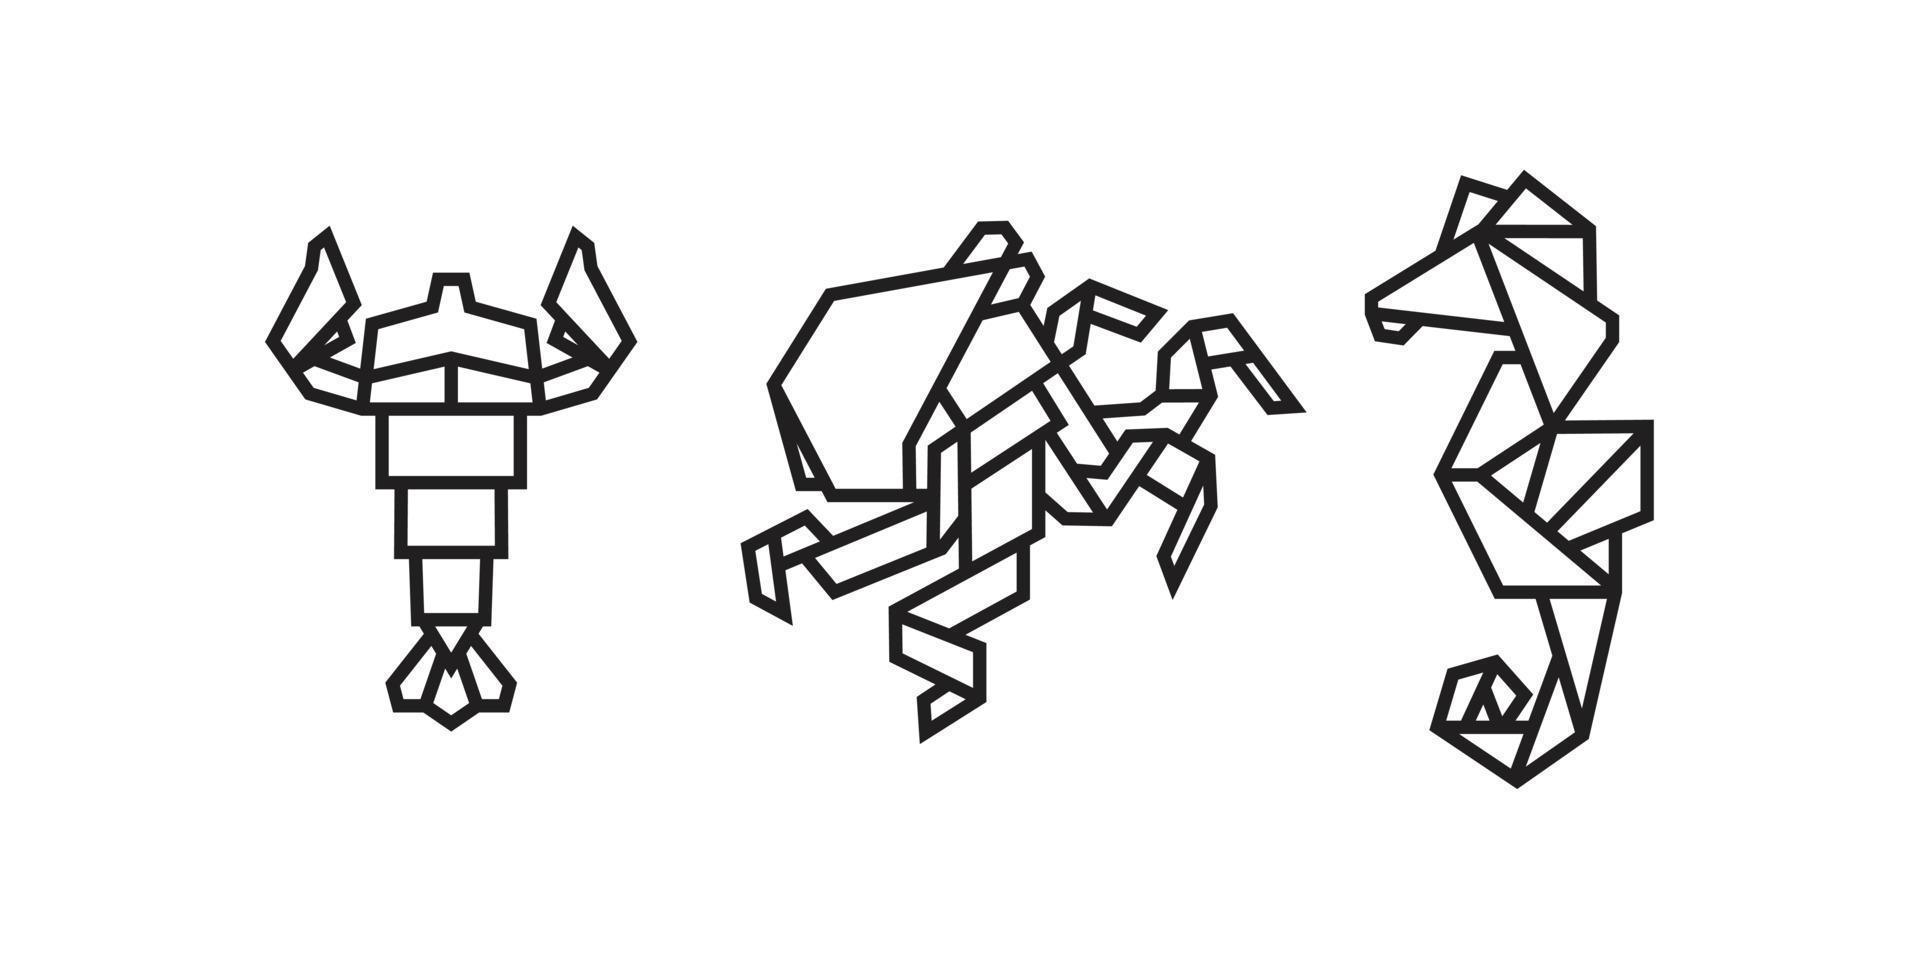 visillustraties in origami-stijl vector